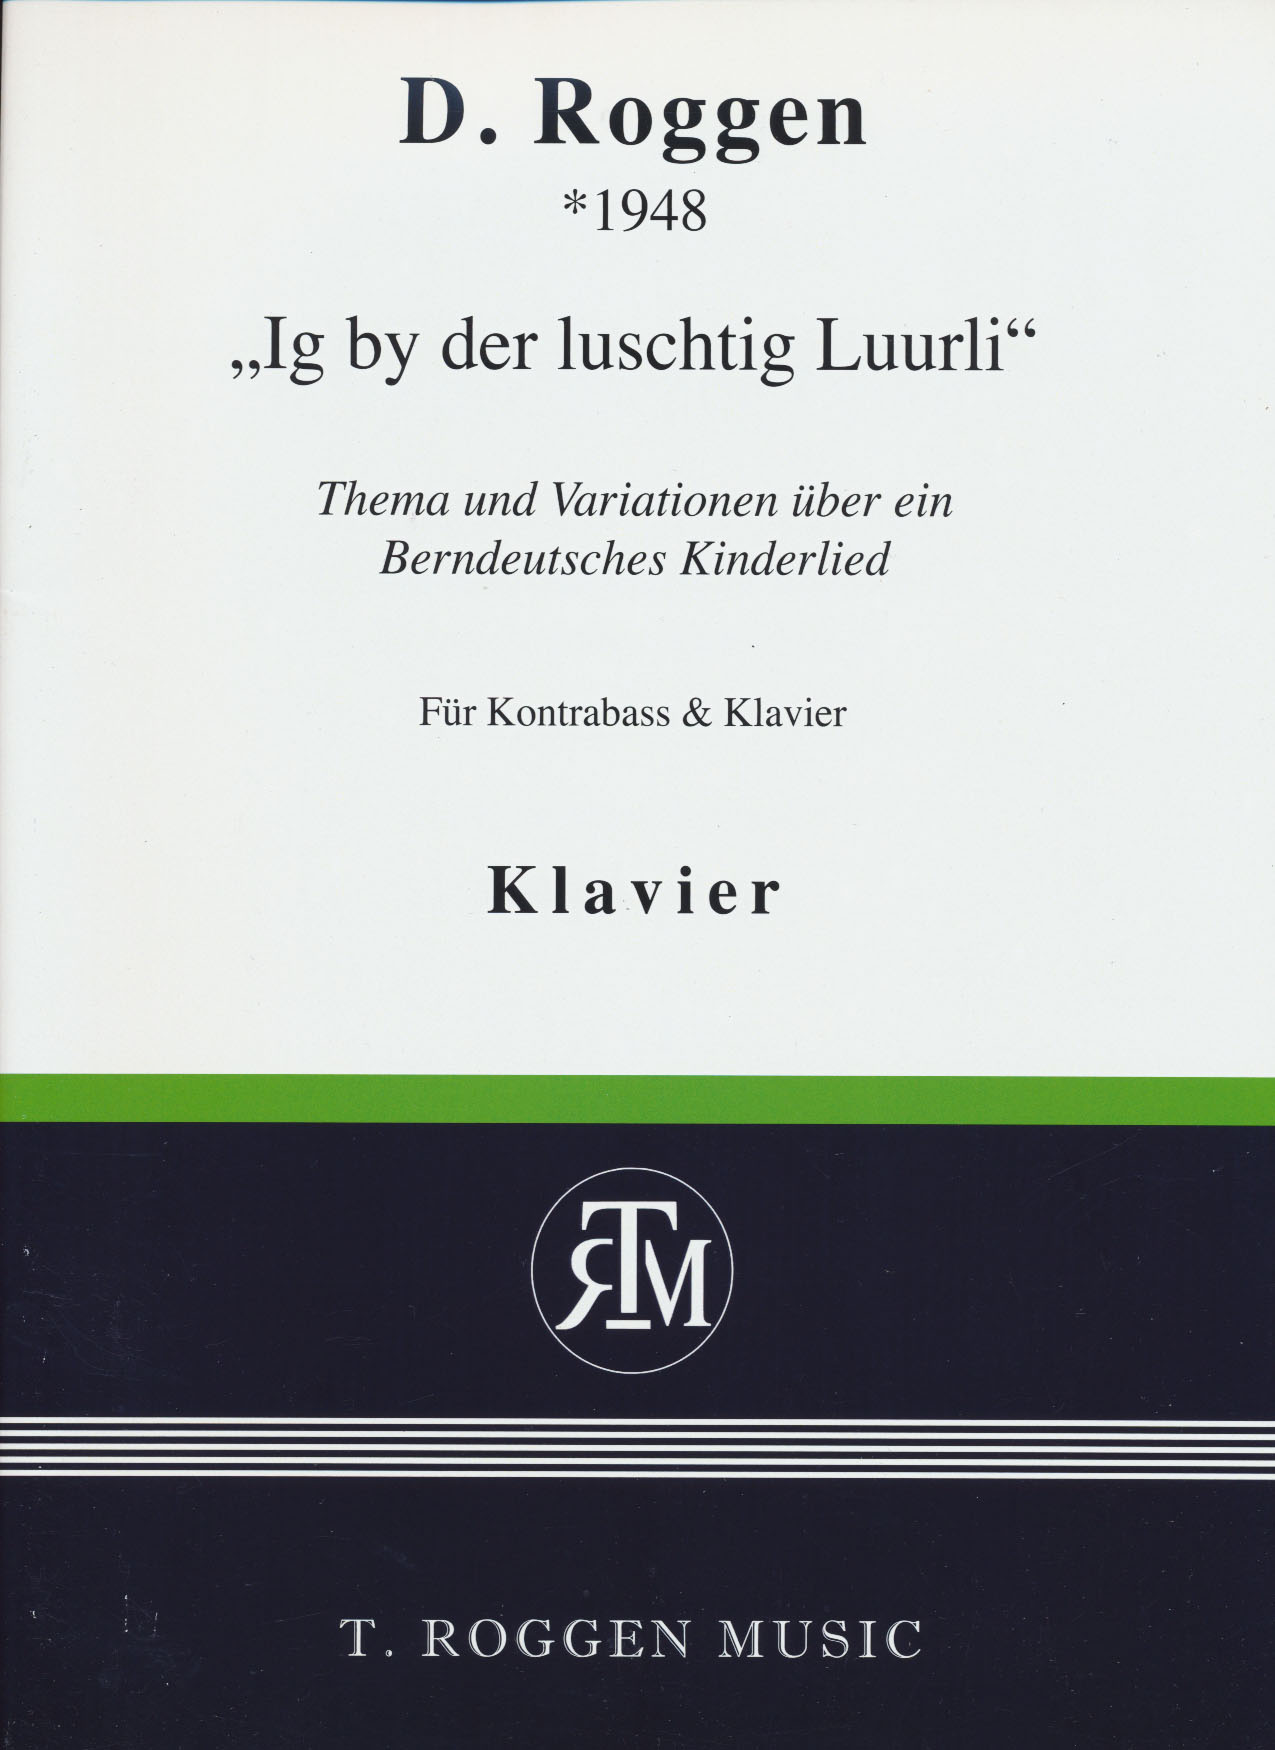 Ig by der luschtig Luurli - The und Variationen (cb,pf)